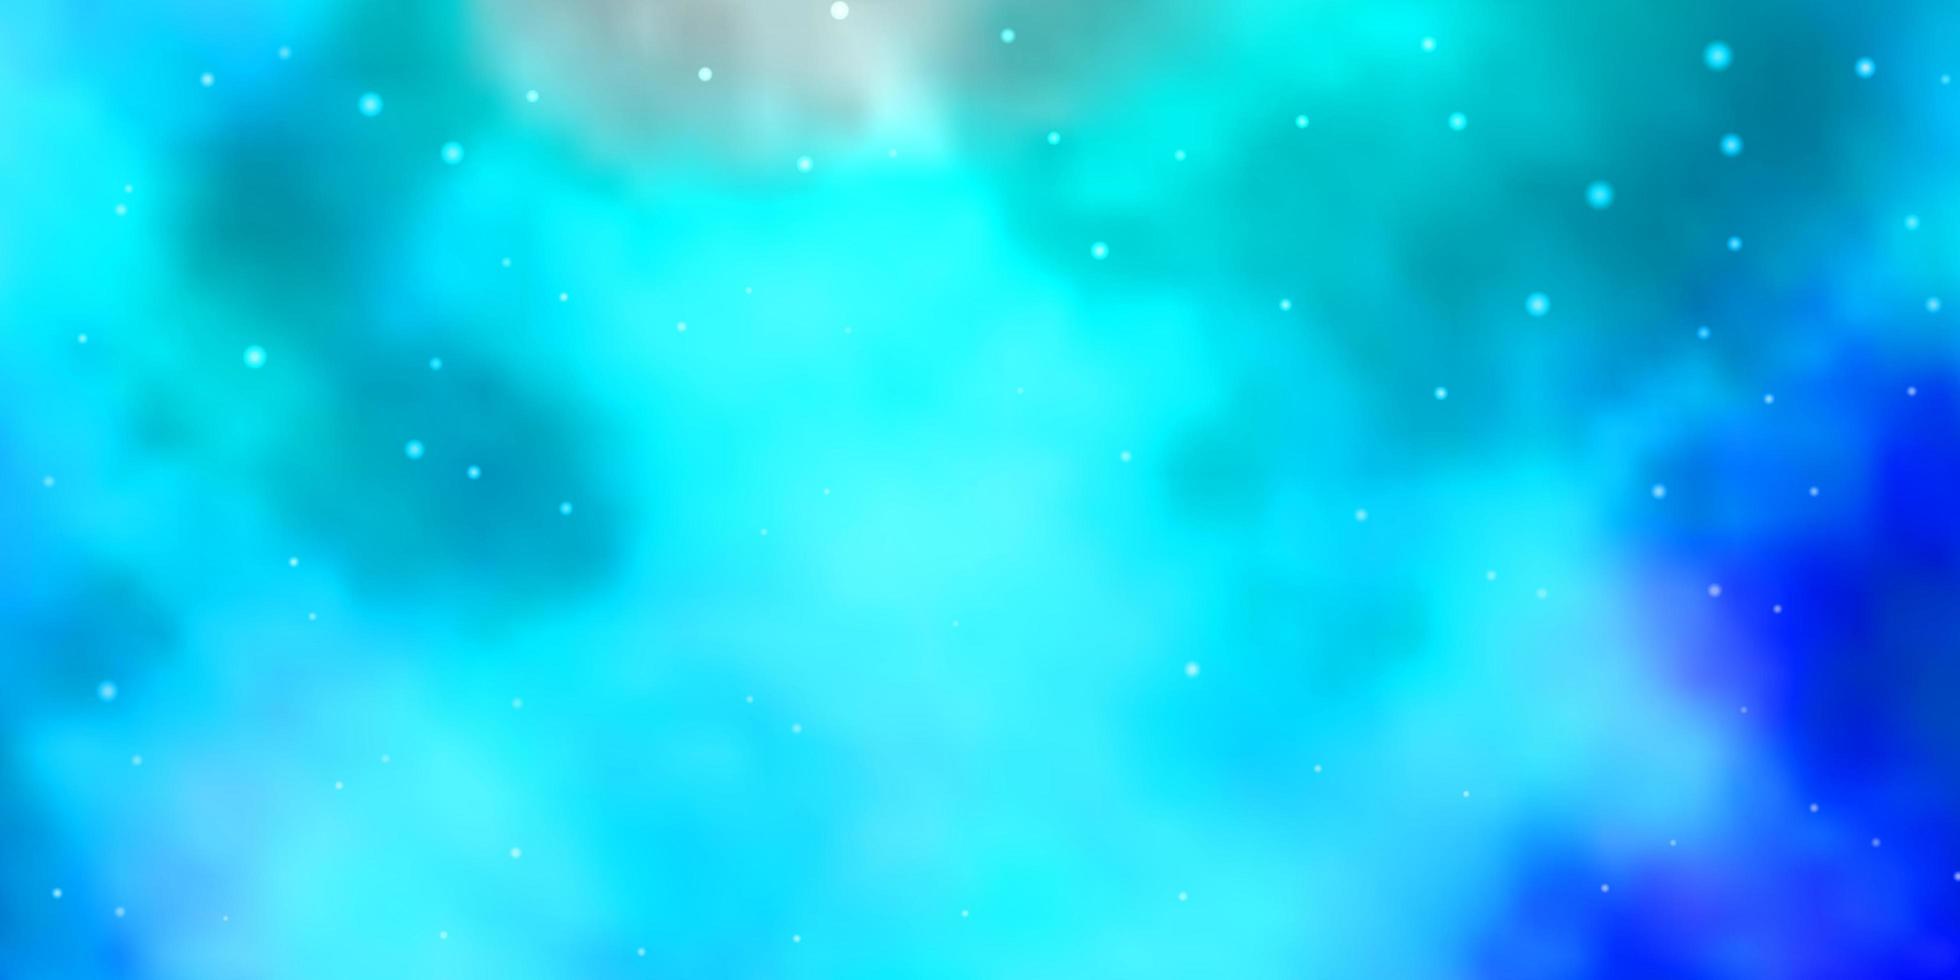 ljusblå vektorbakgrund med små och stora stjärnor. färgglad illustration i abstrakt stil med lutningsstjärnor. mönster för webbplatser, målsidor. vektor